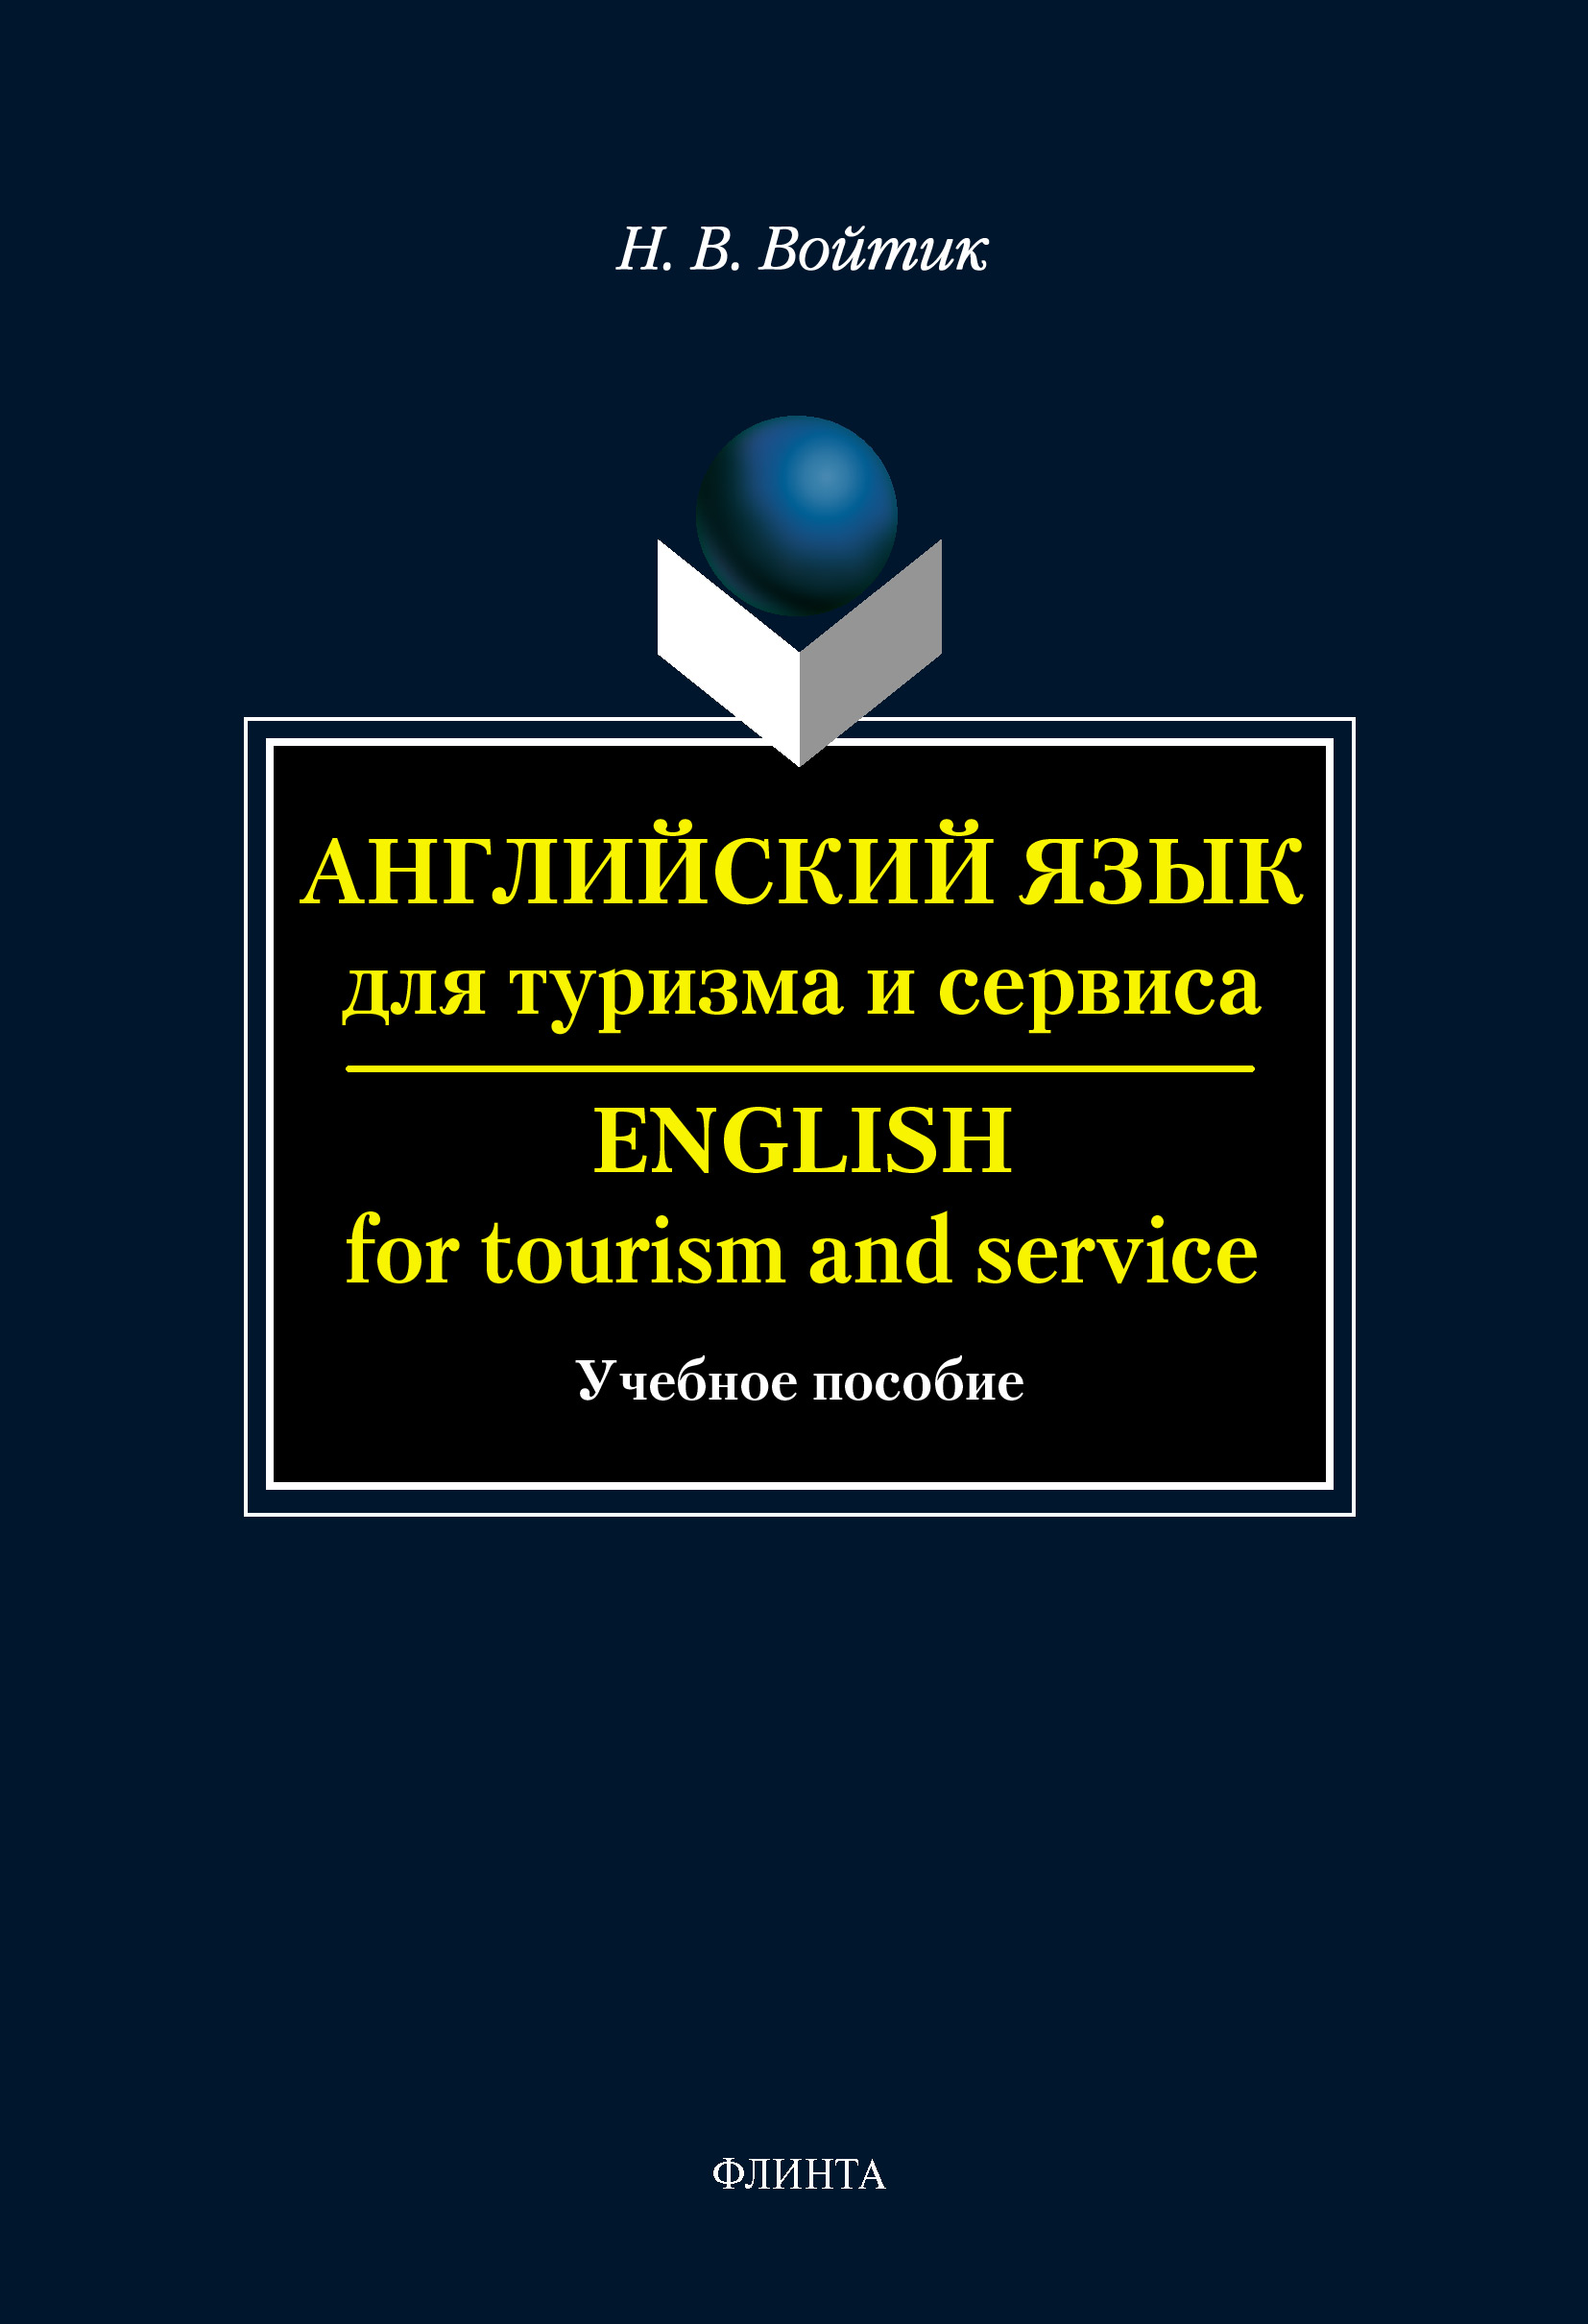 Английский язык для туризма и сервиса. English for Tourism and Service: учебное пособие